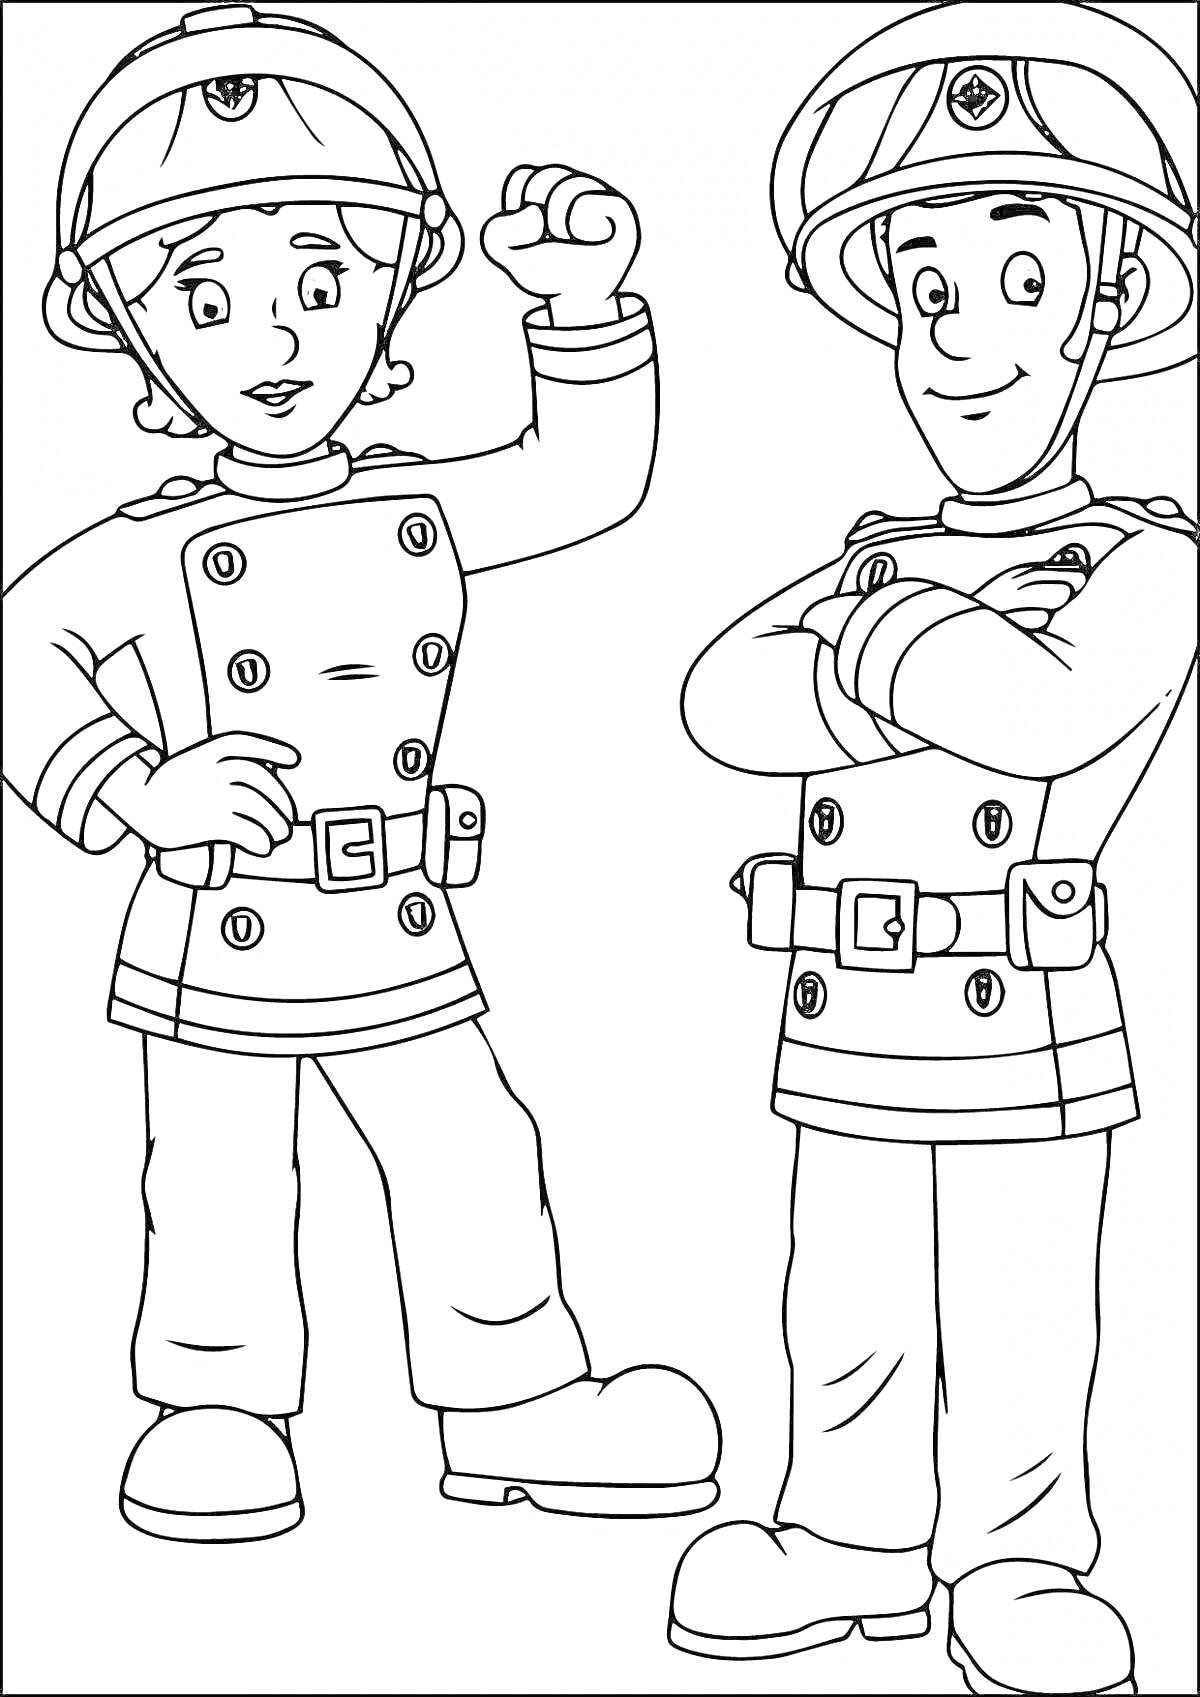 Раскраска Два спасателя в форме со шлемами, один из спасателей стоит с поднятым кулаком, другой скрестив руки на груди